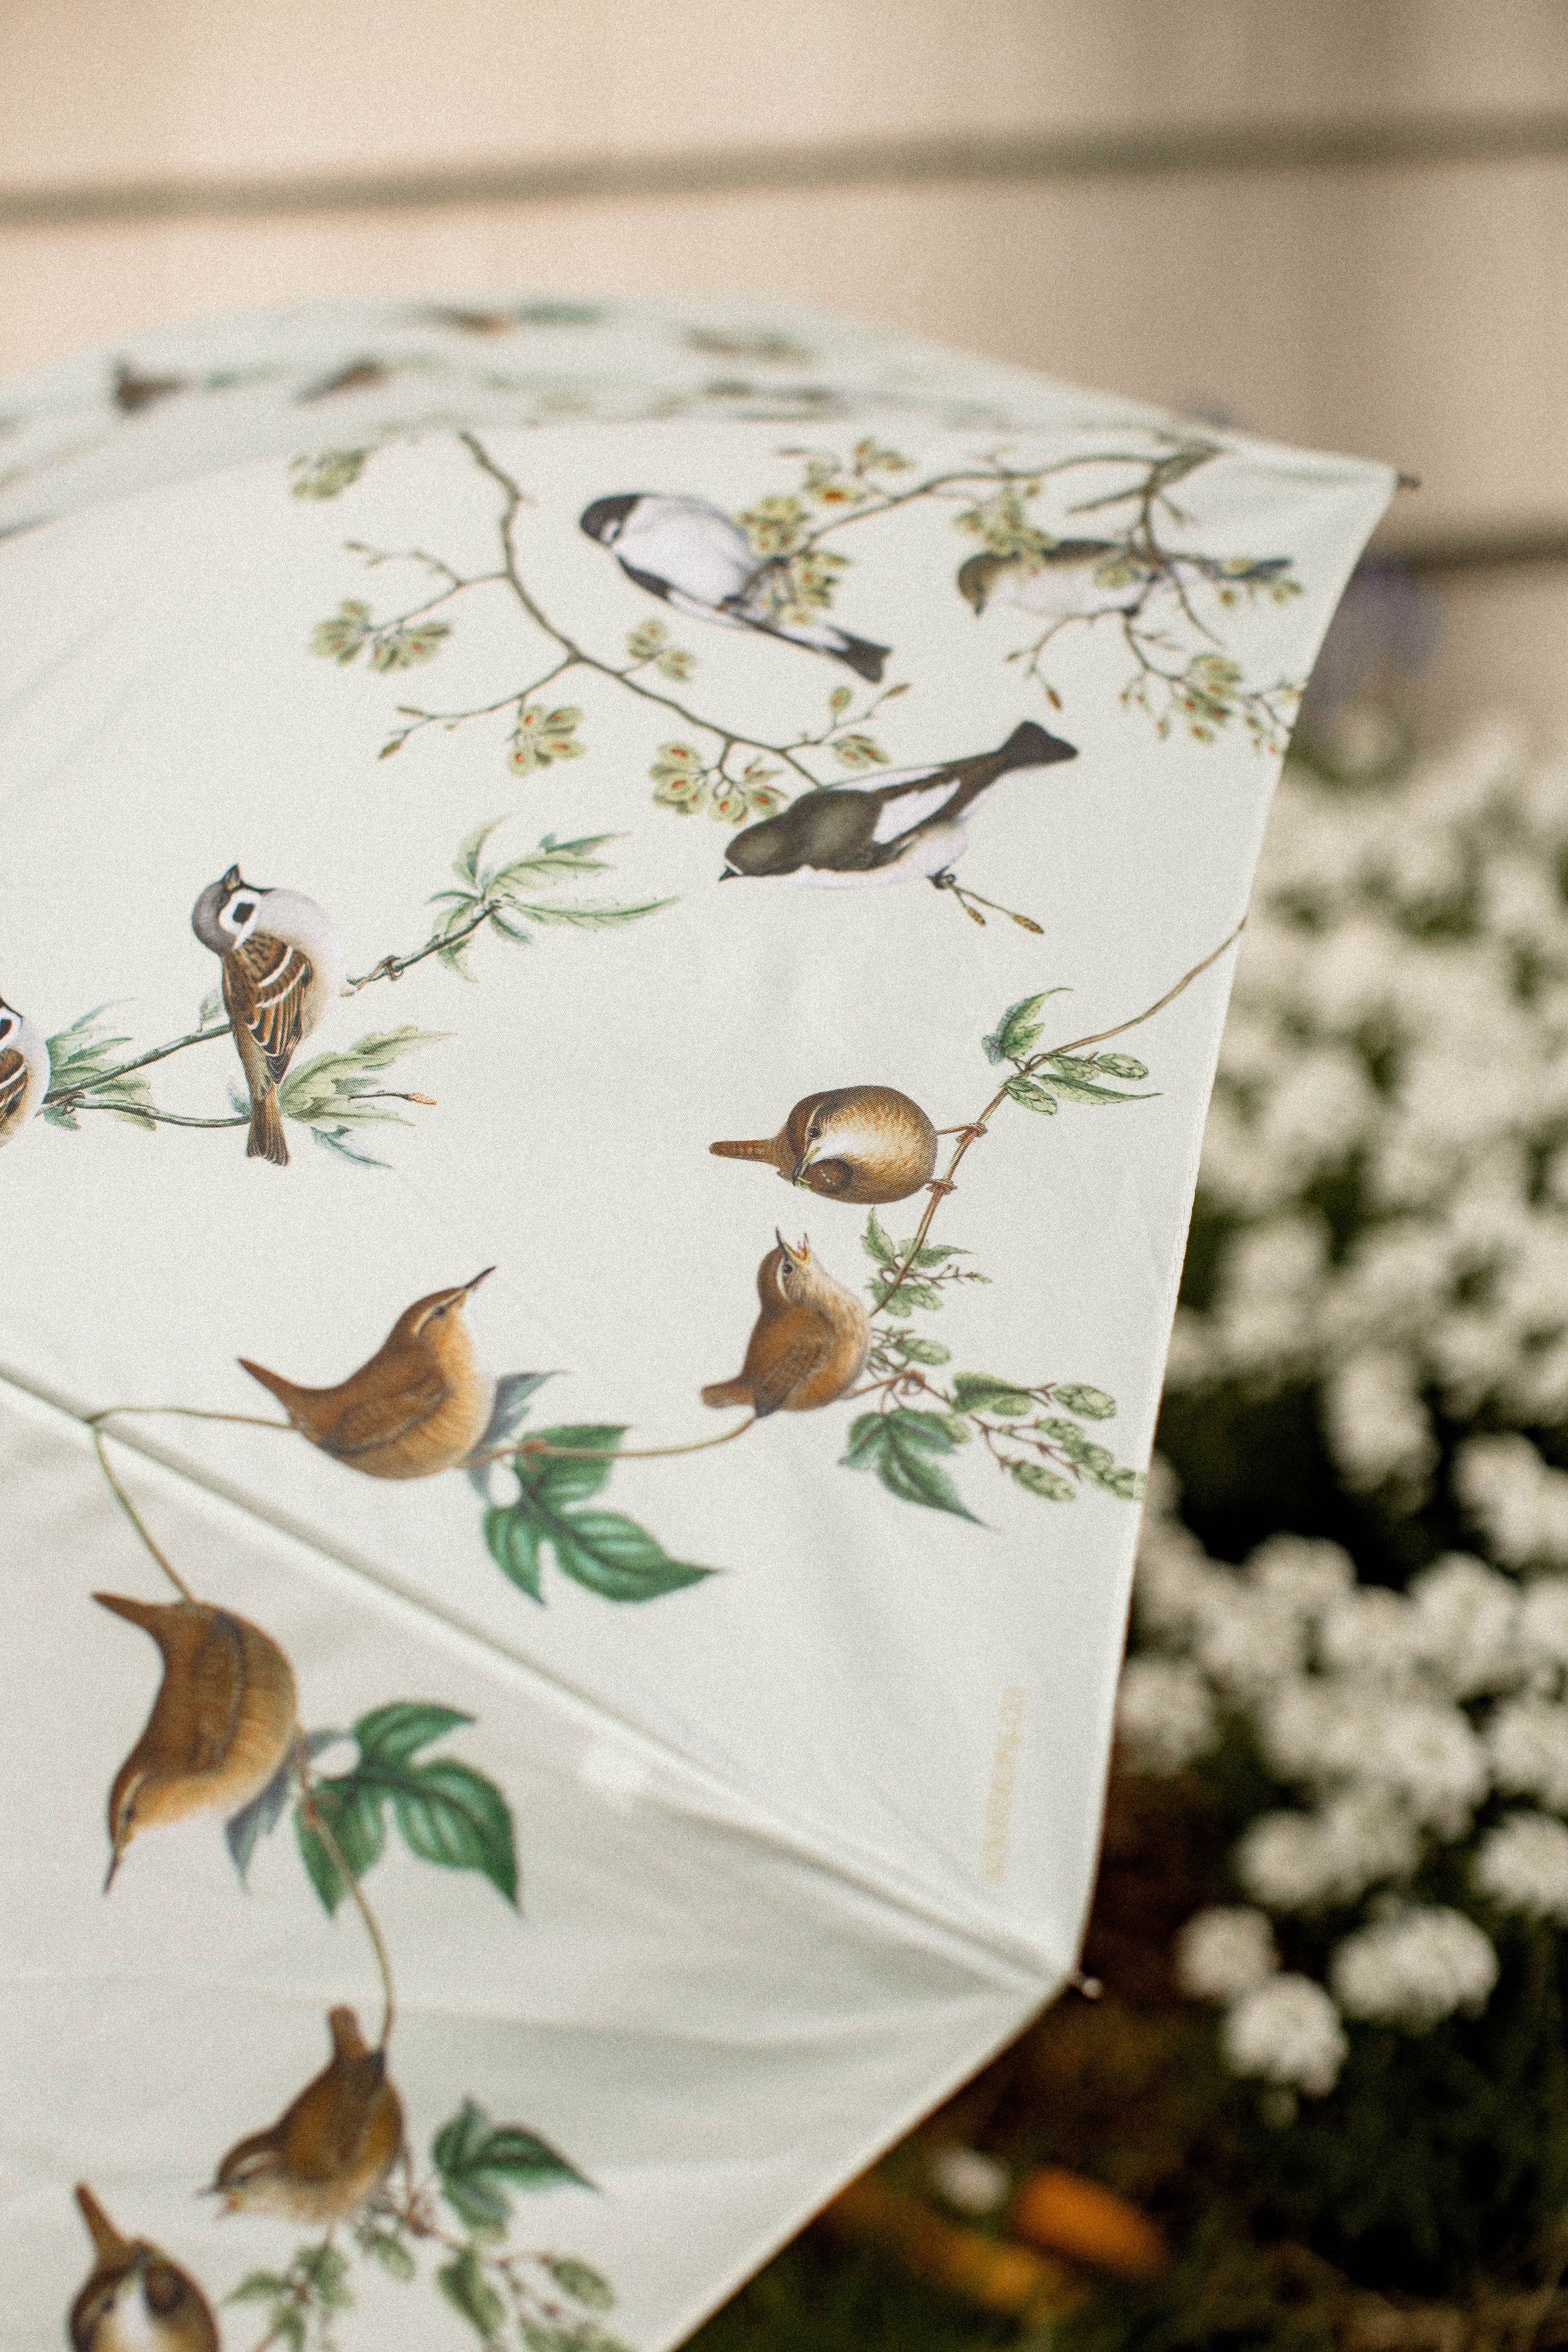 Garden Birds Umbrella